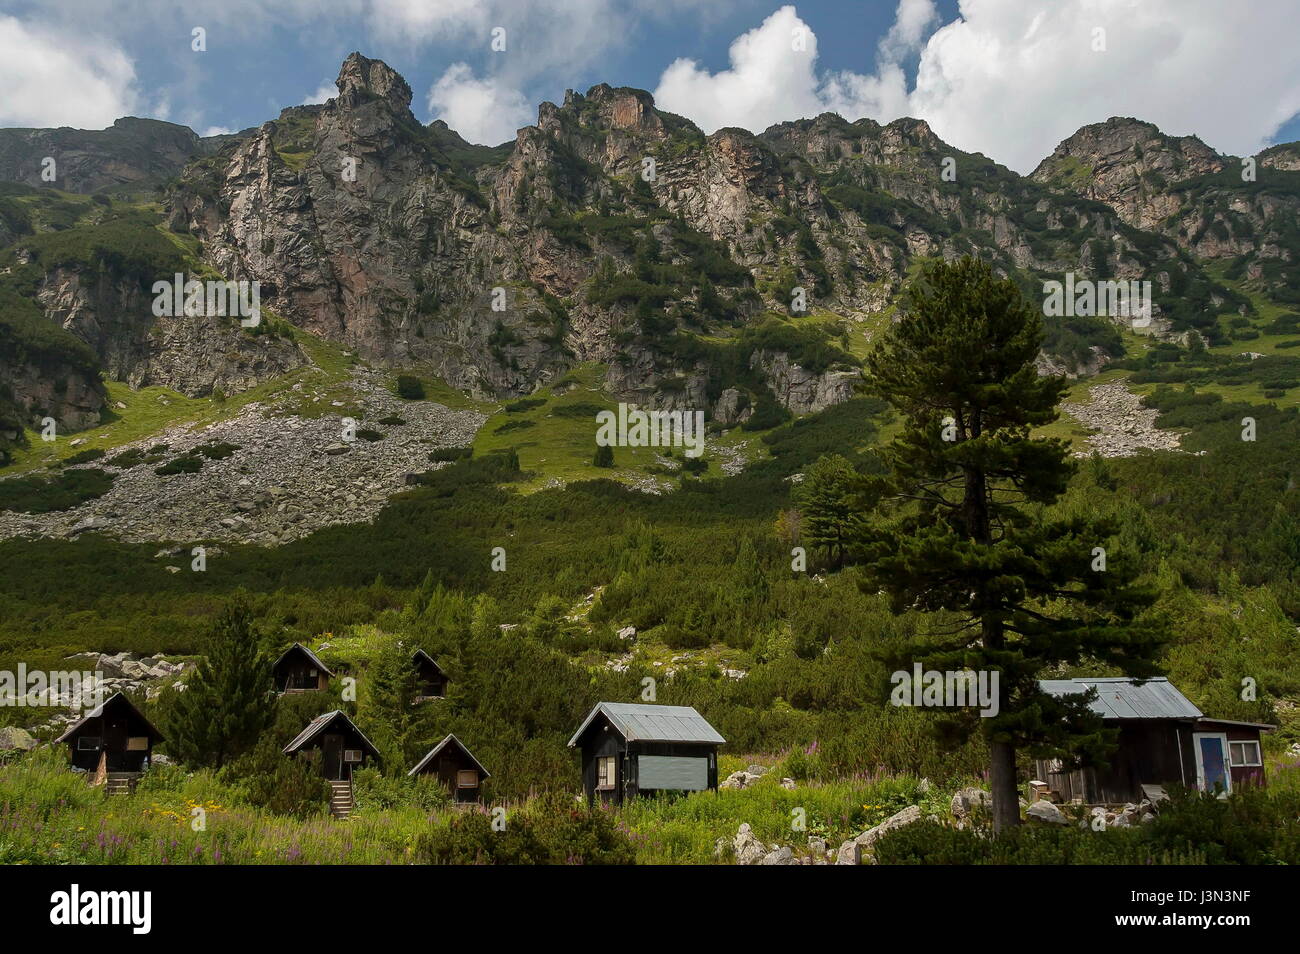 Voir de vieux bois maison, bivouac ou bungalow en maison d'hôte à Maliovitza écologique sur le marcher vers Maliovitza sommet en montagne de Rila, Bulgarie Banque D'Images